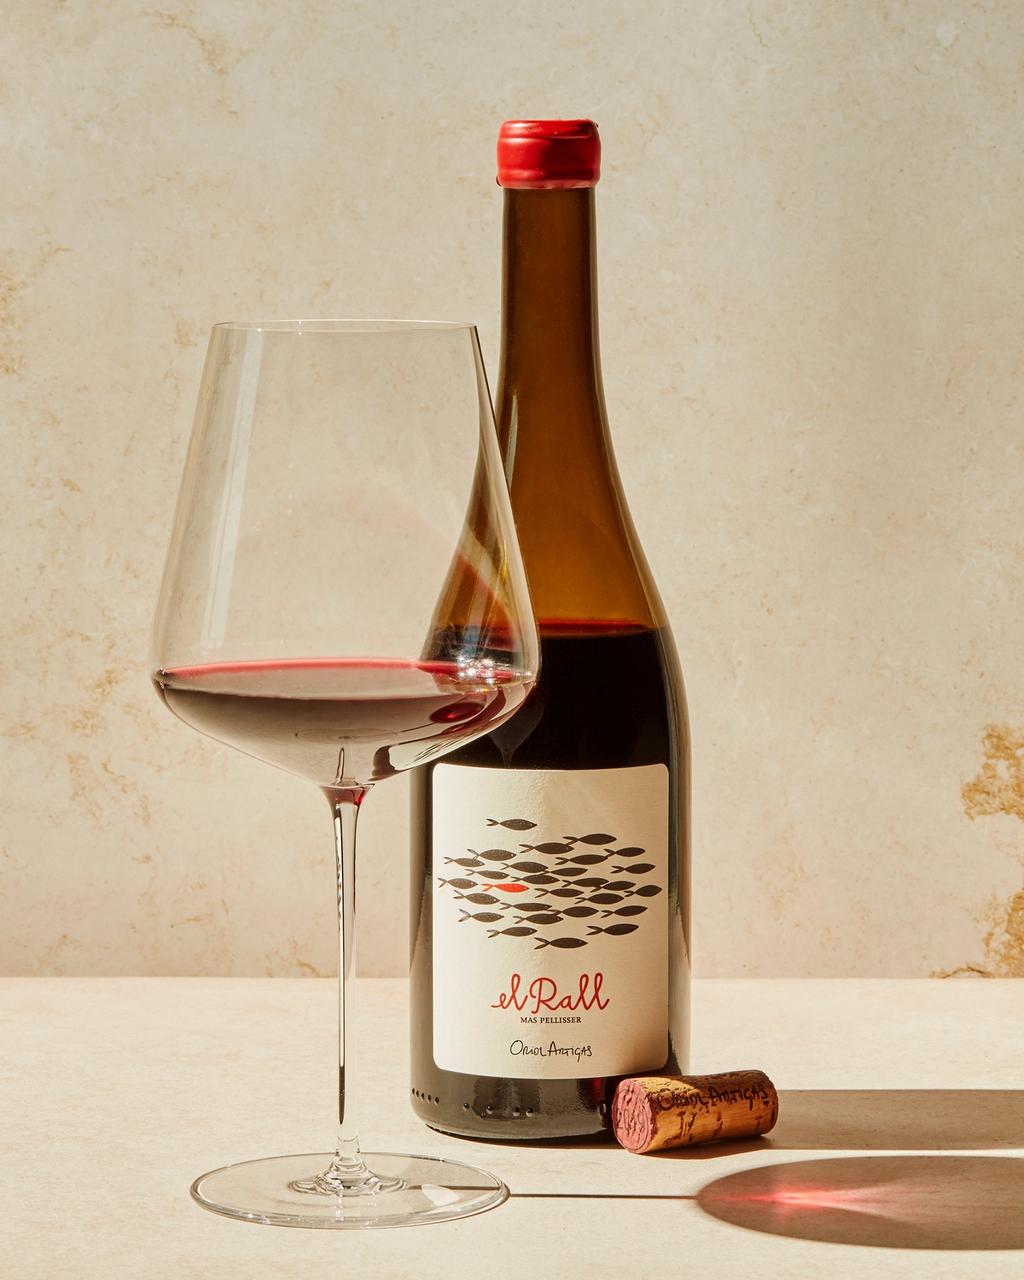 Mørk og intens rødvin fra Oriol Artigas.